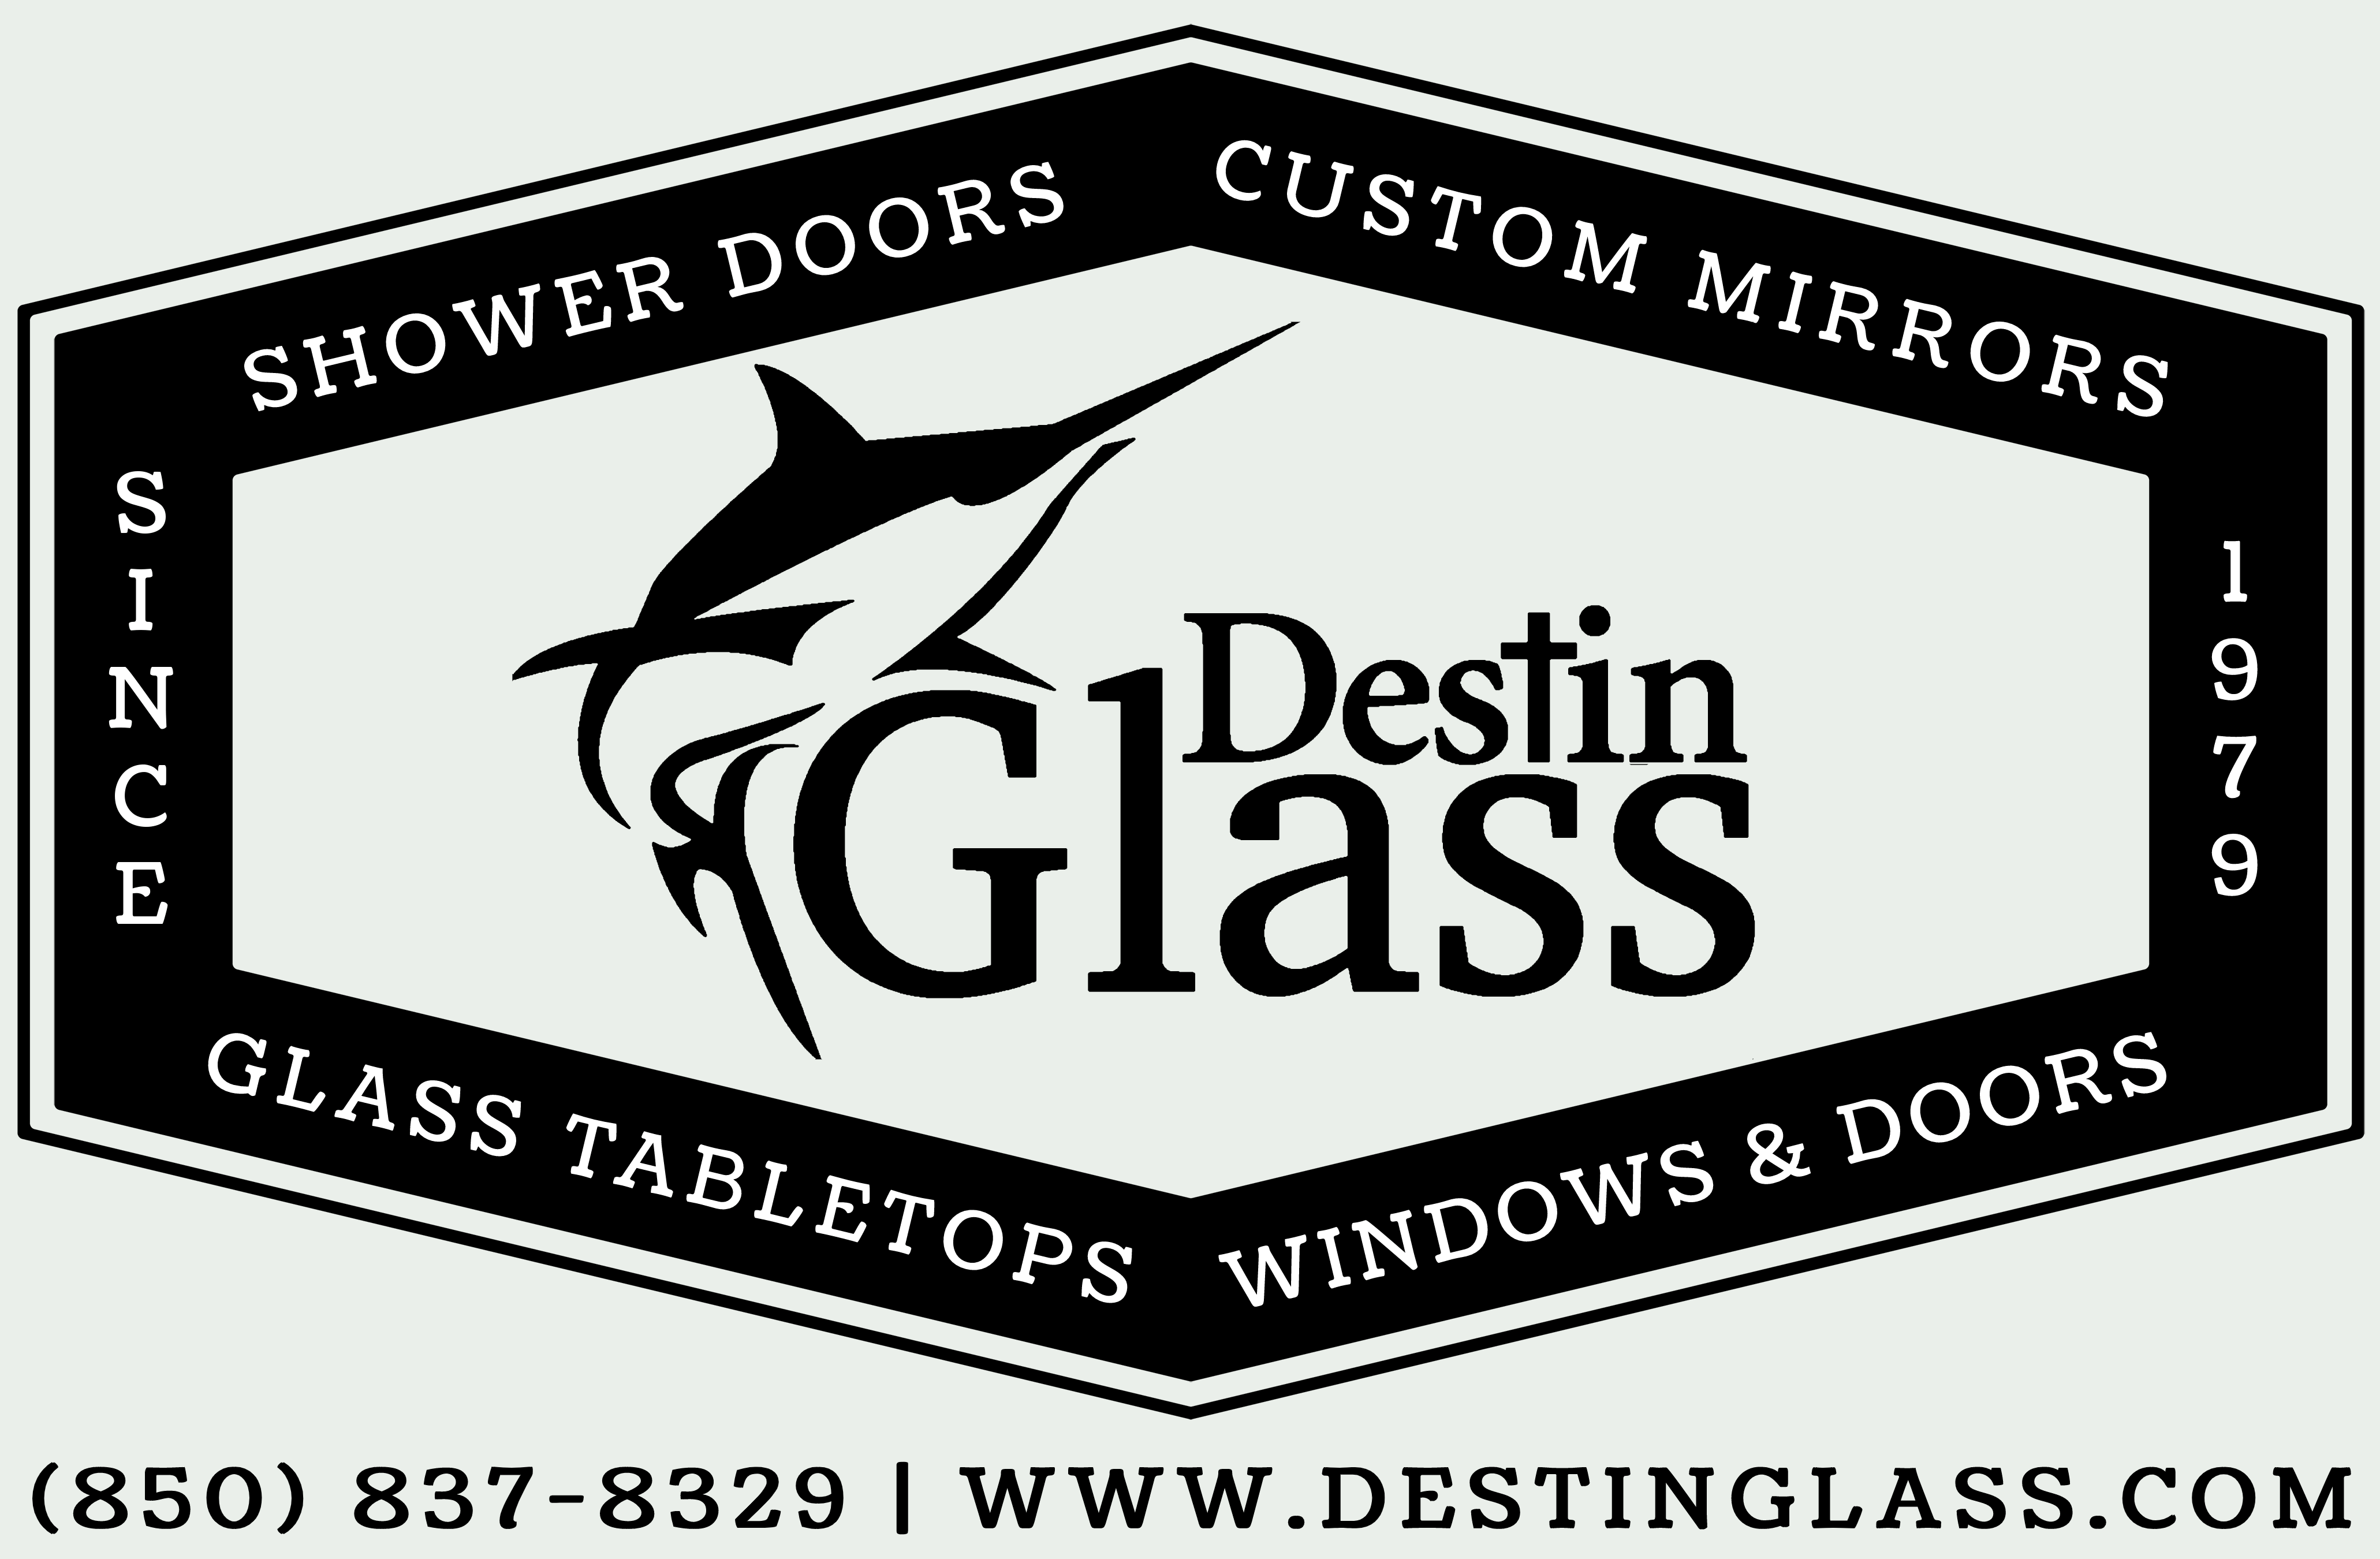 www.destinglass.com